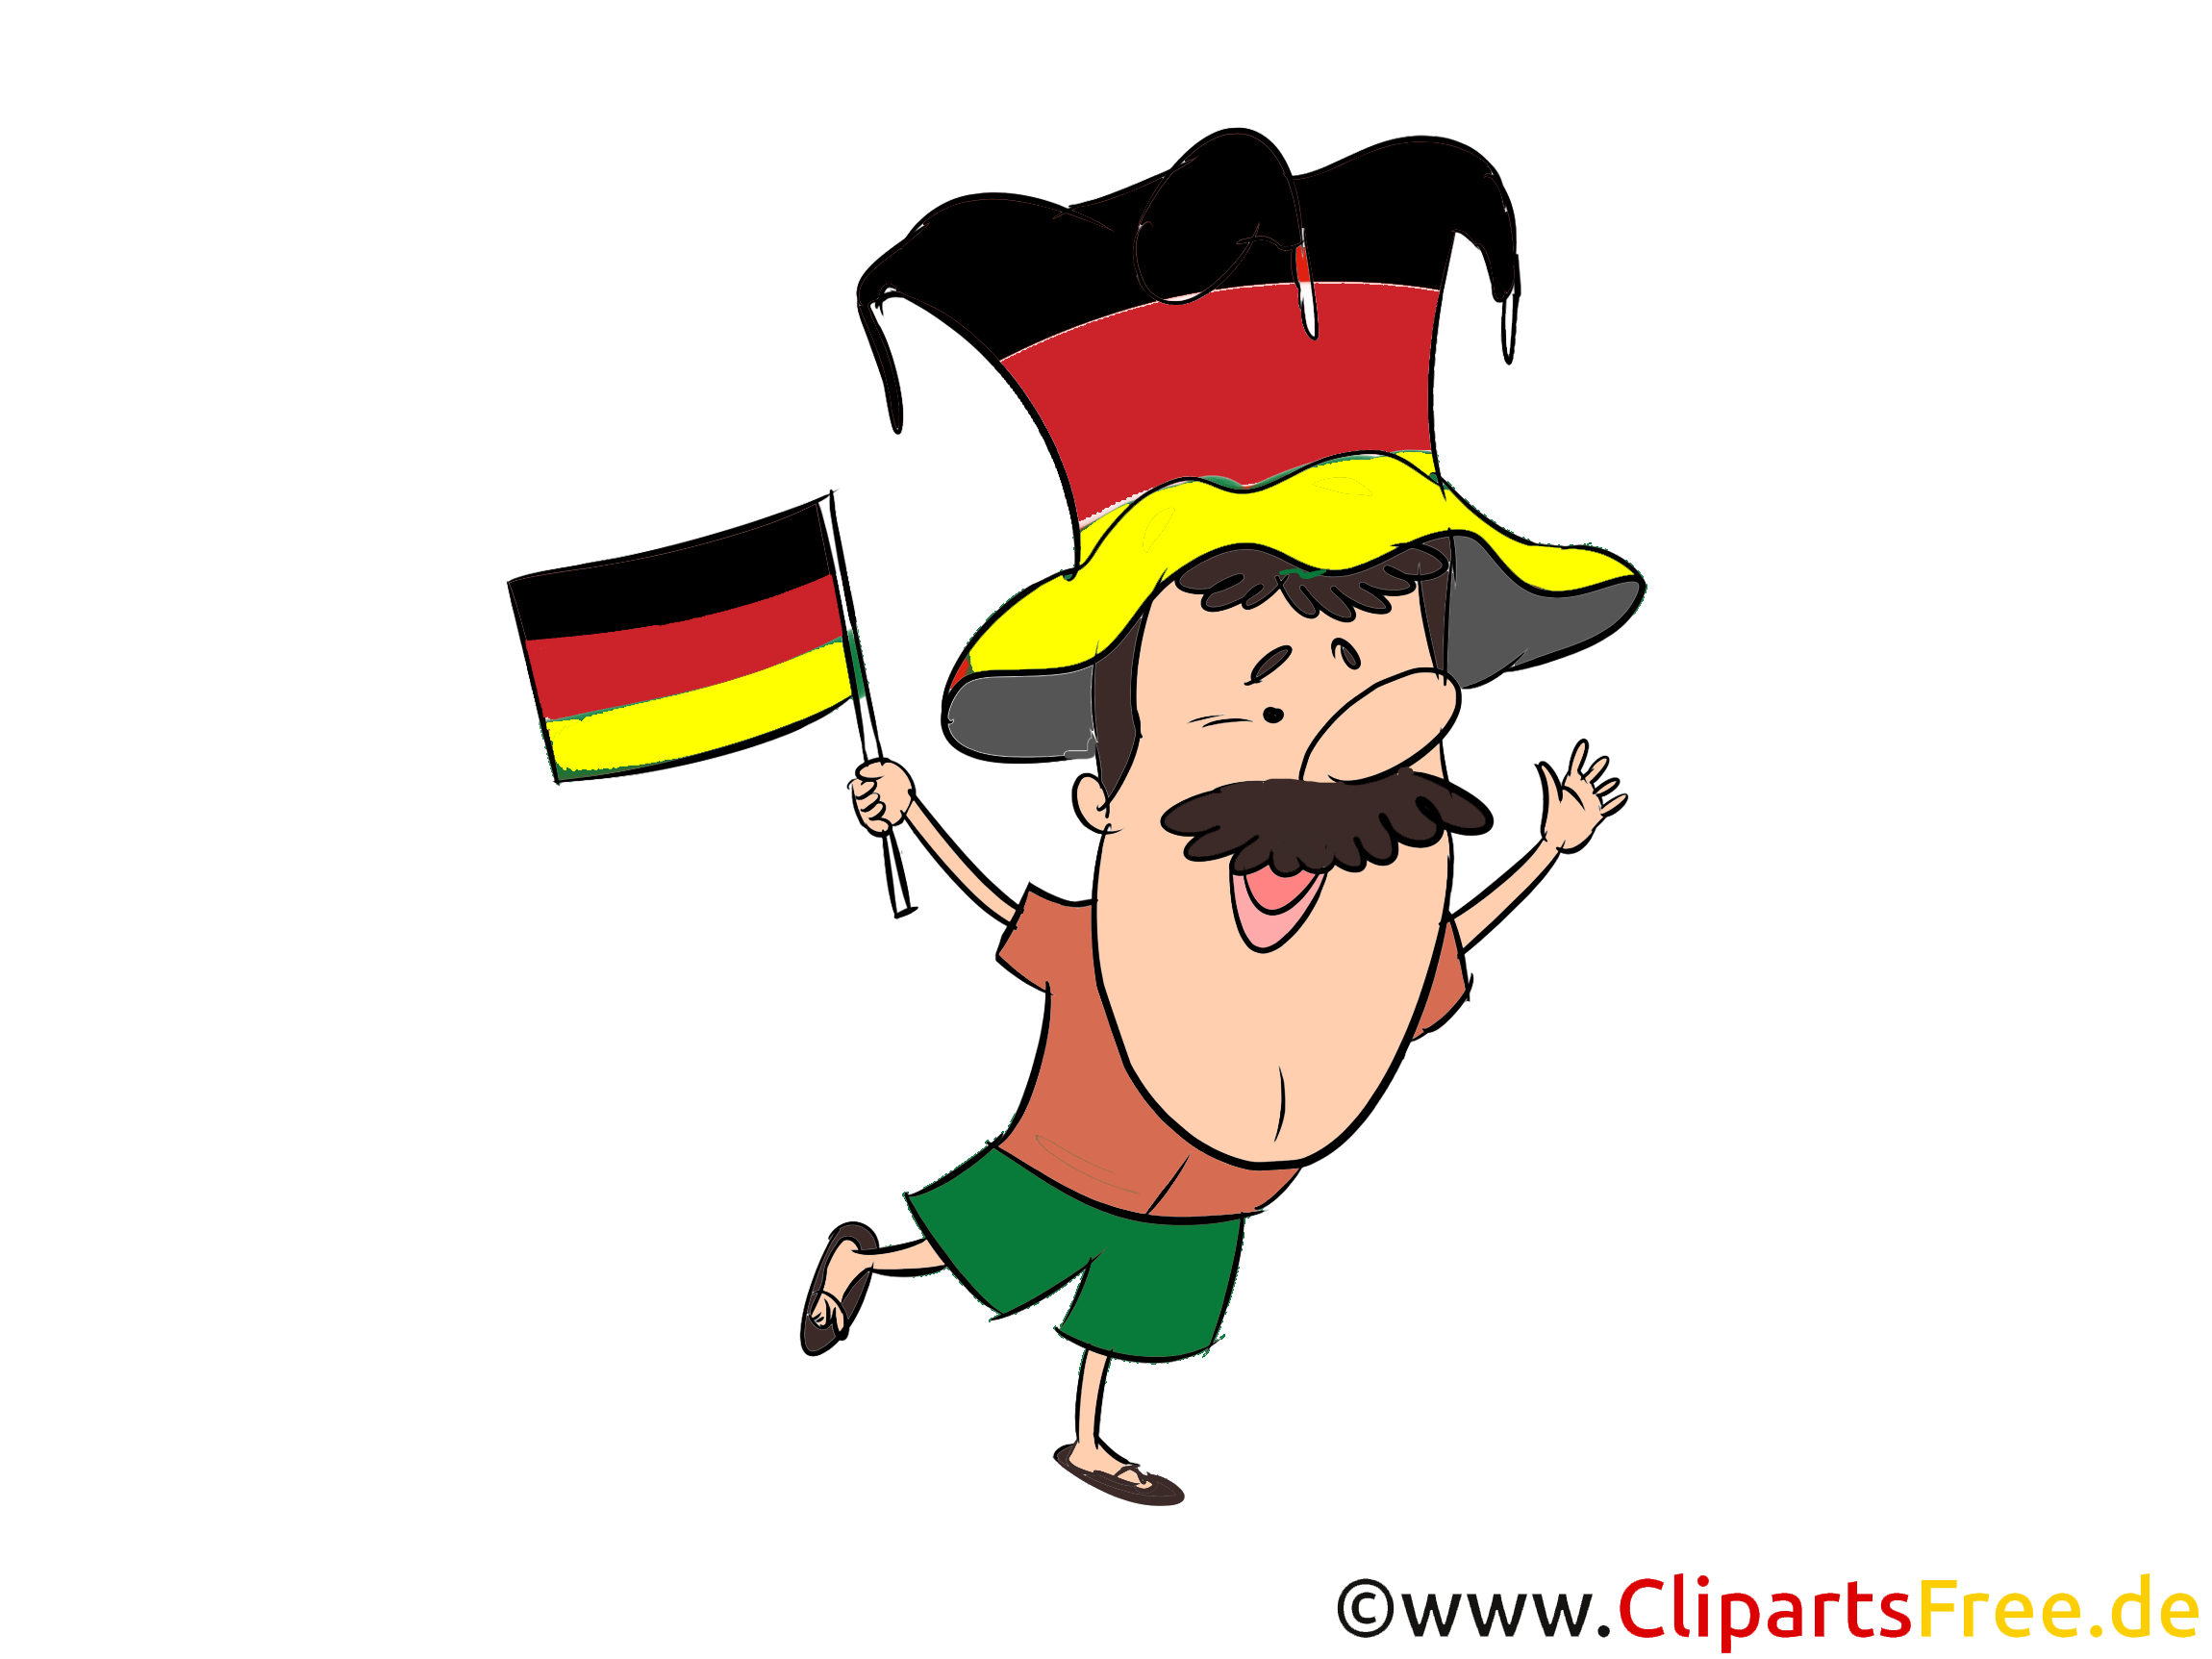 German sport football fan cartoon image